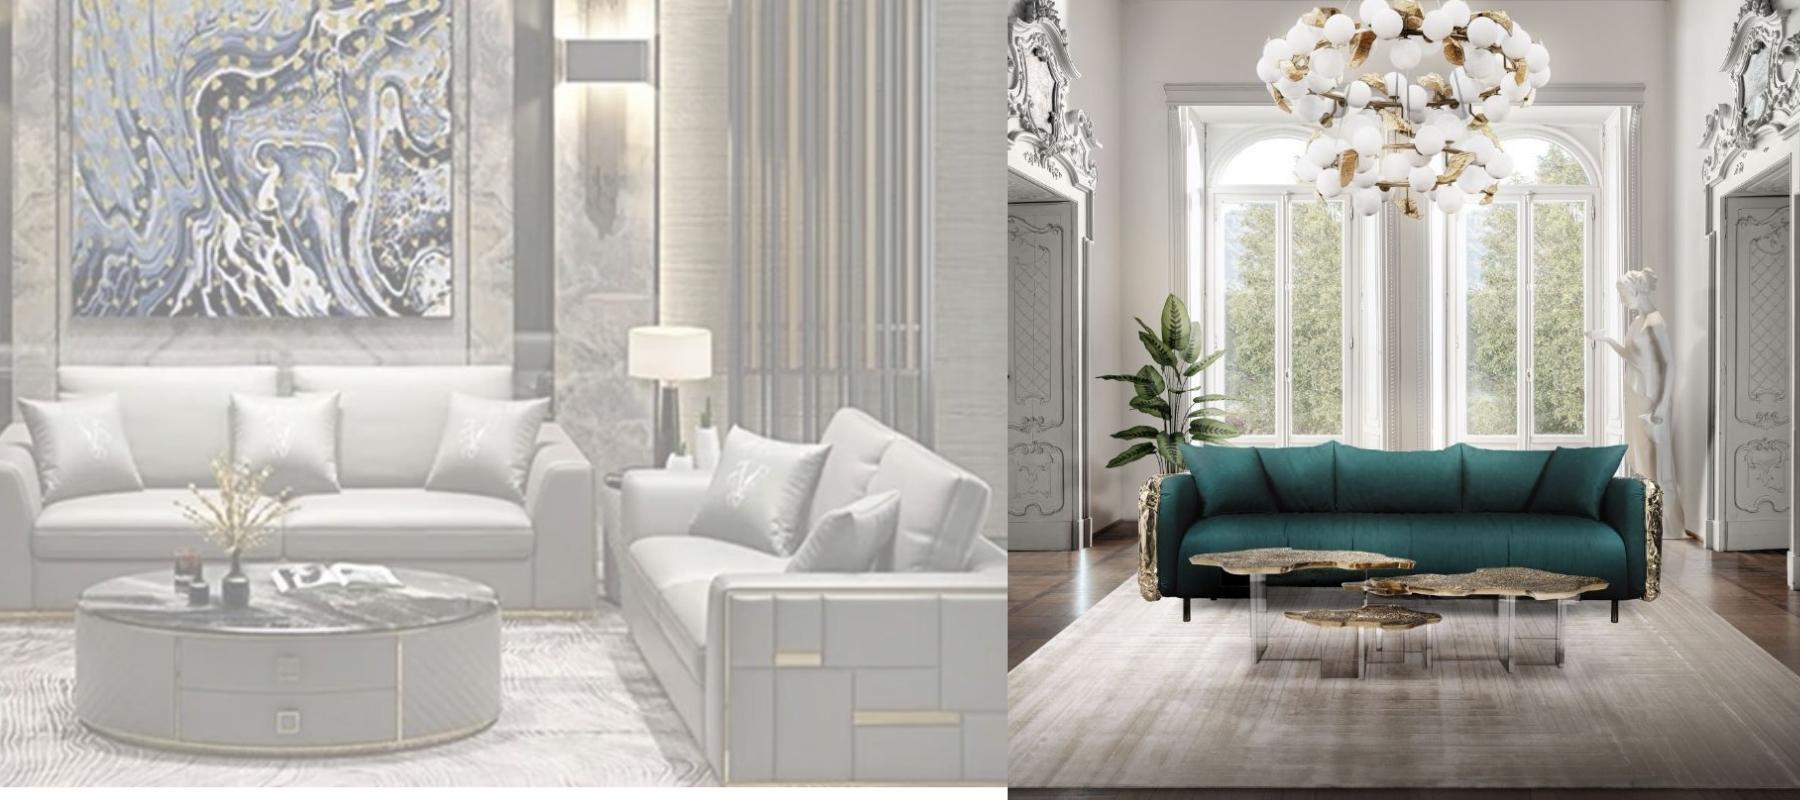 Exclusive High End Designer Sofas- Elegant Interior